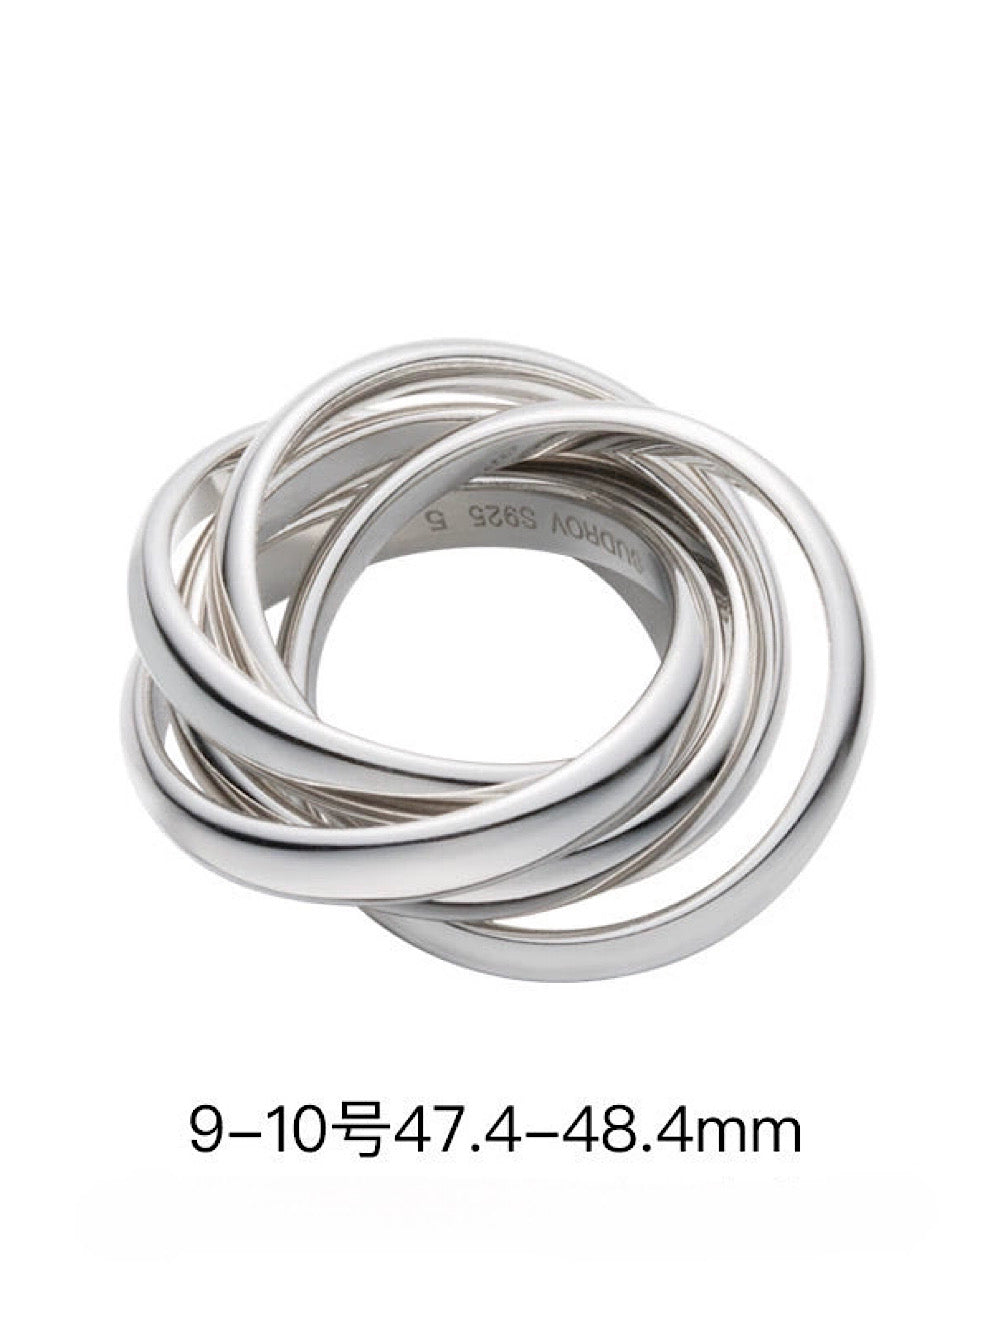 Silver index finger ring_BDHL5138 - HELROUS